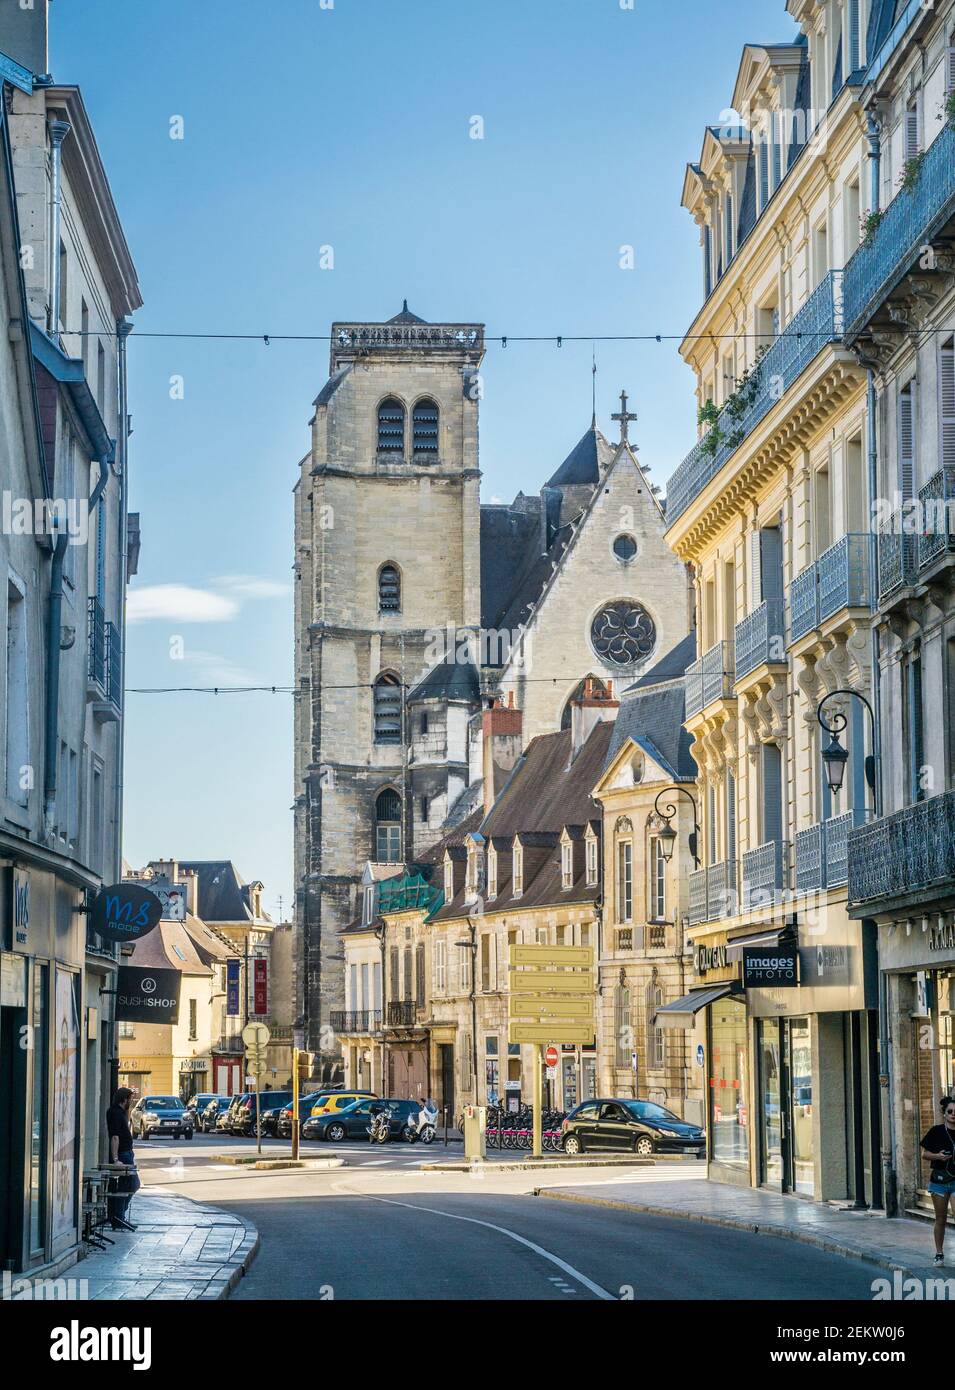 Place Bossuet, Dijon, mit Blick auf die Kirche Saint-Jean im gotischen Stil, die heute das Theater Dijon-Bourgogne, Dijon, Burgund, Departmen Côte-d'Or beherbergt Stockfoto